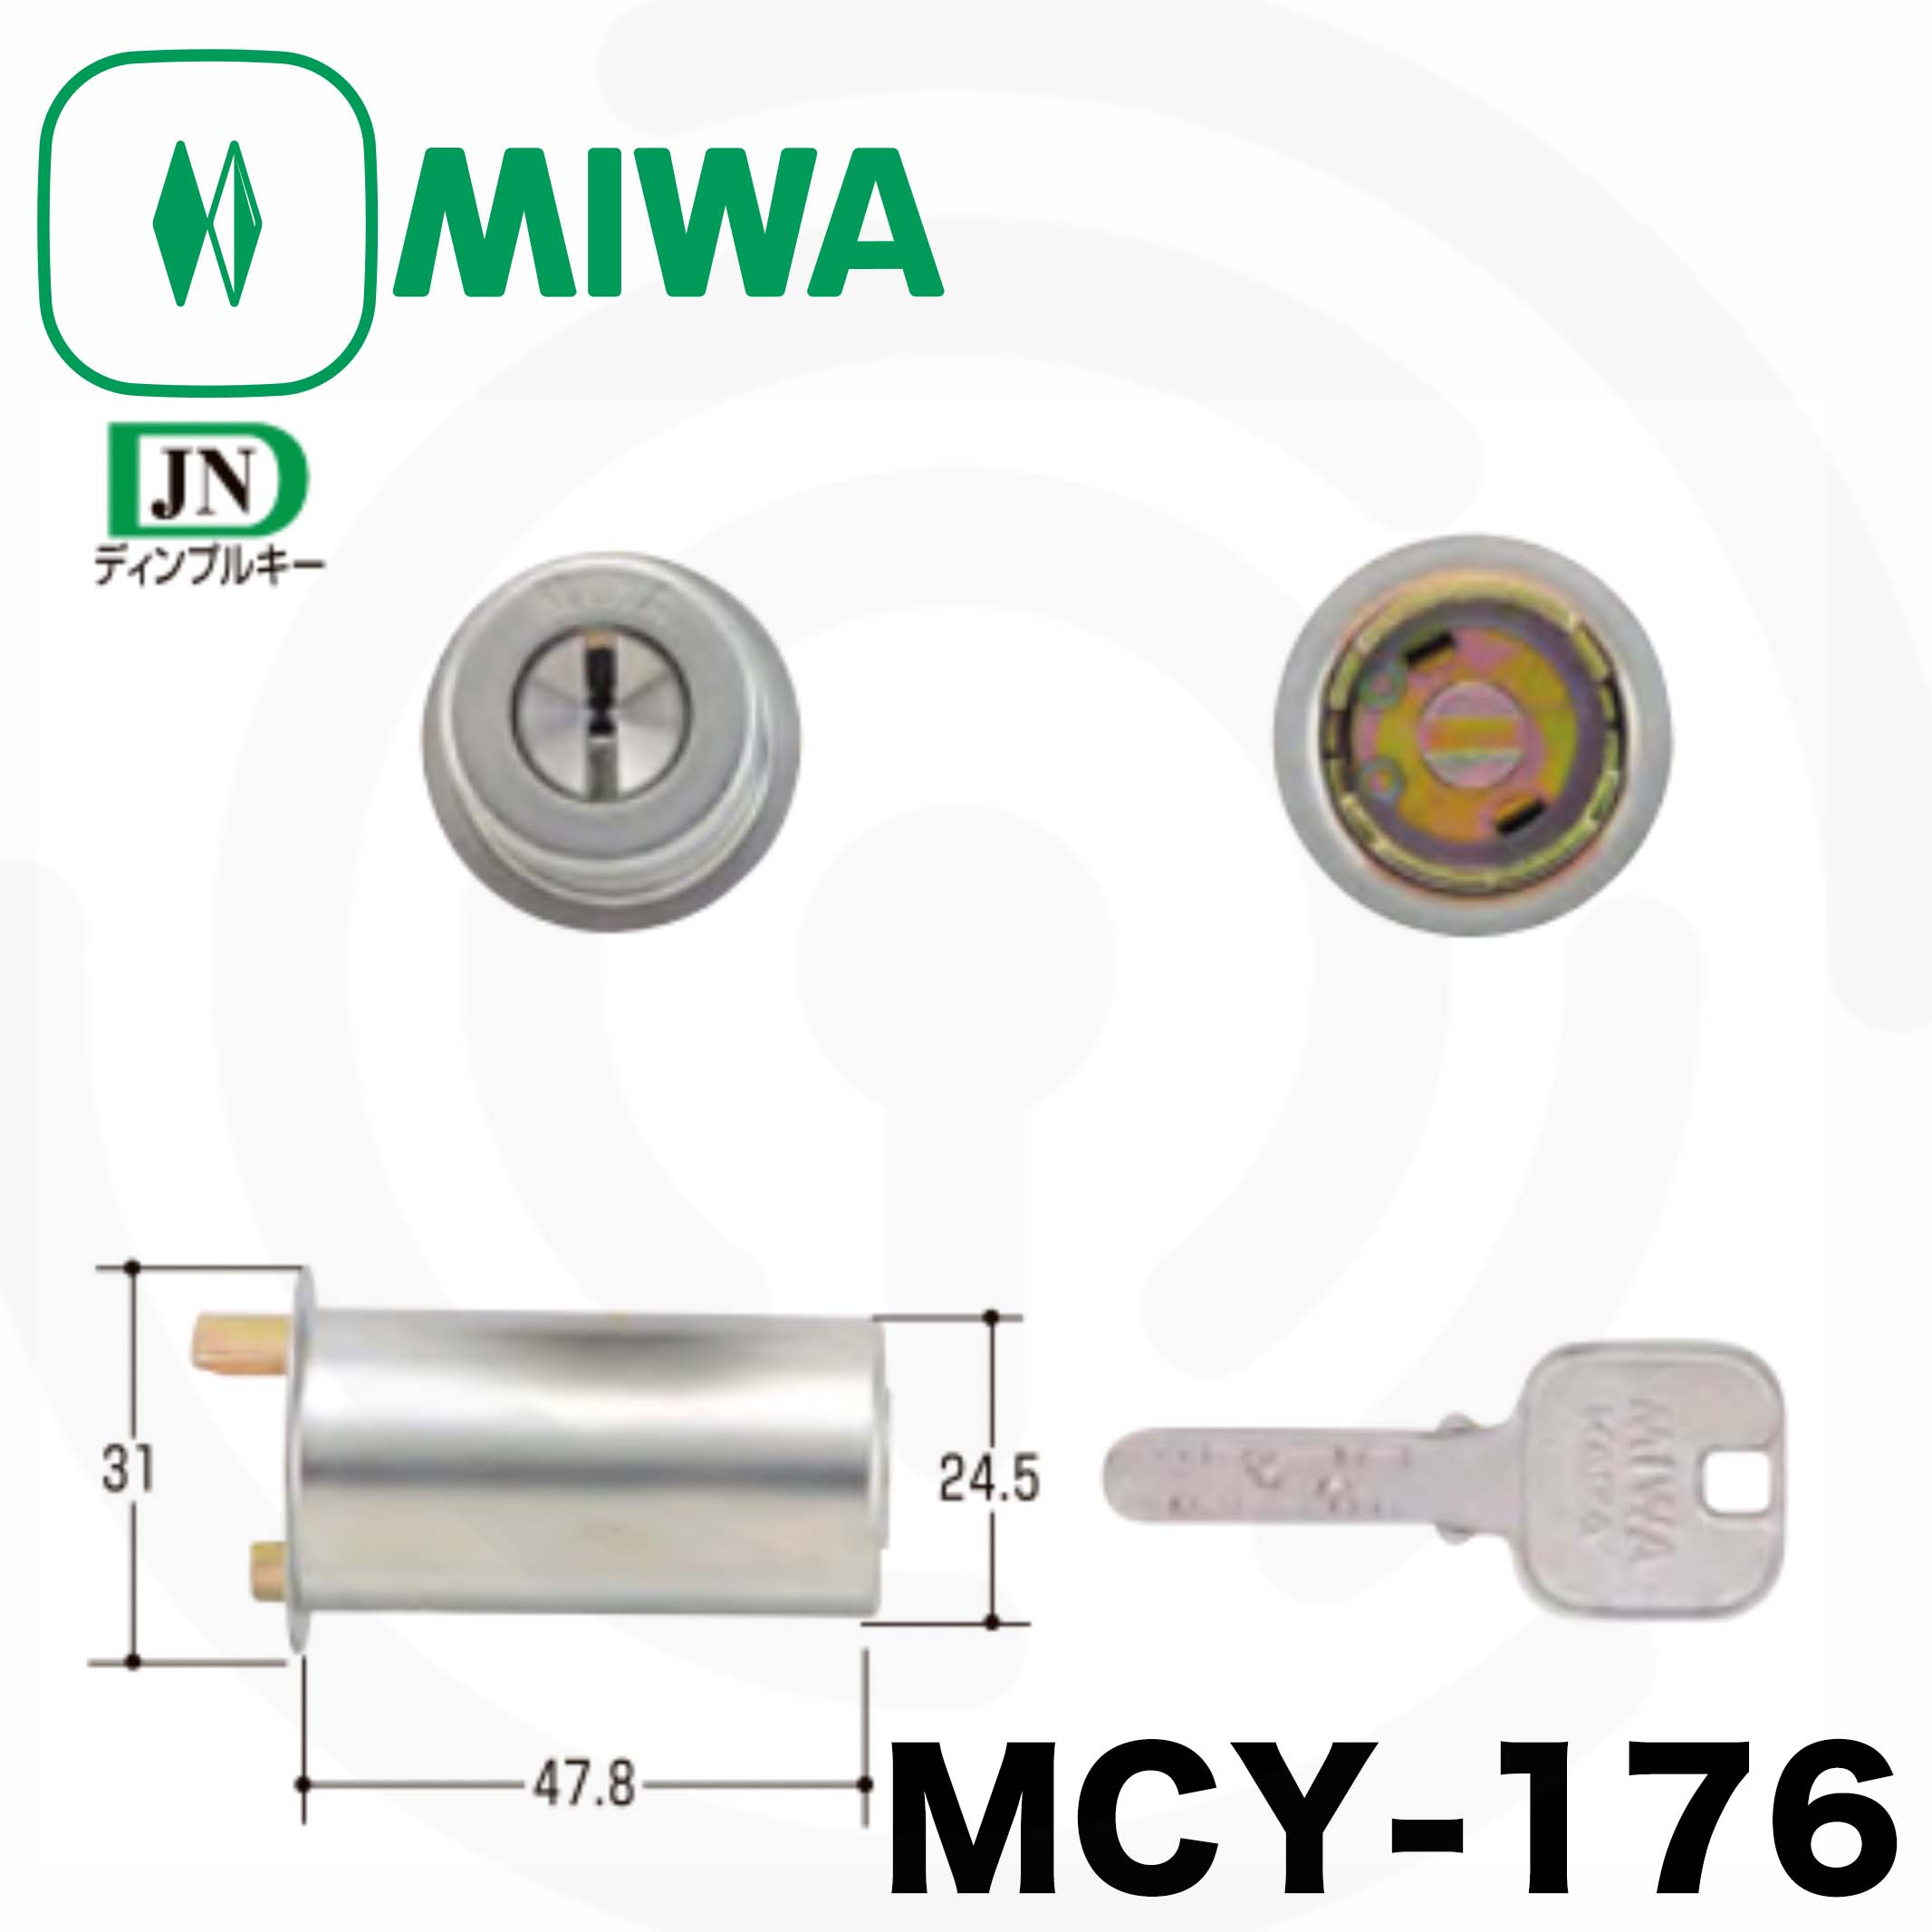 ミズタニ:MIWA取替用シリンダー MCY-128 鍵 交換用